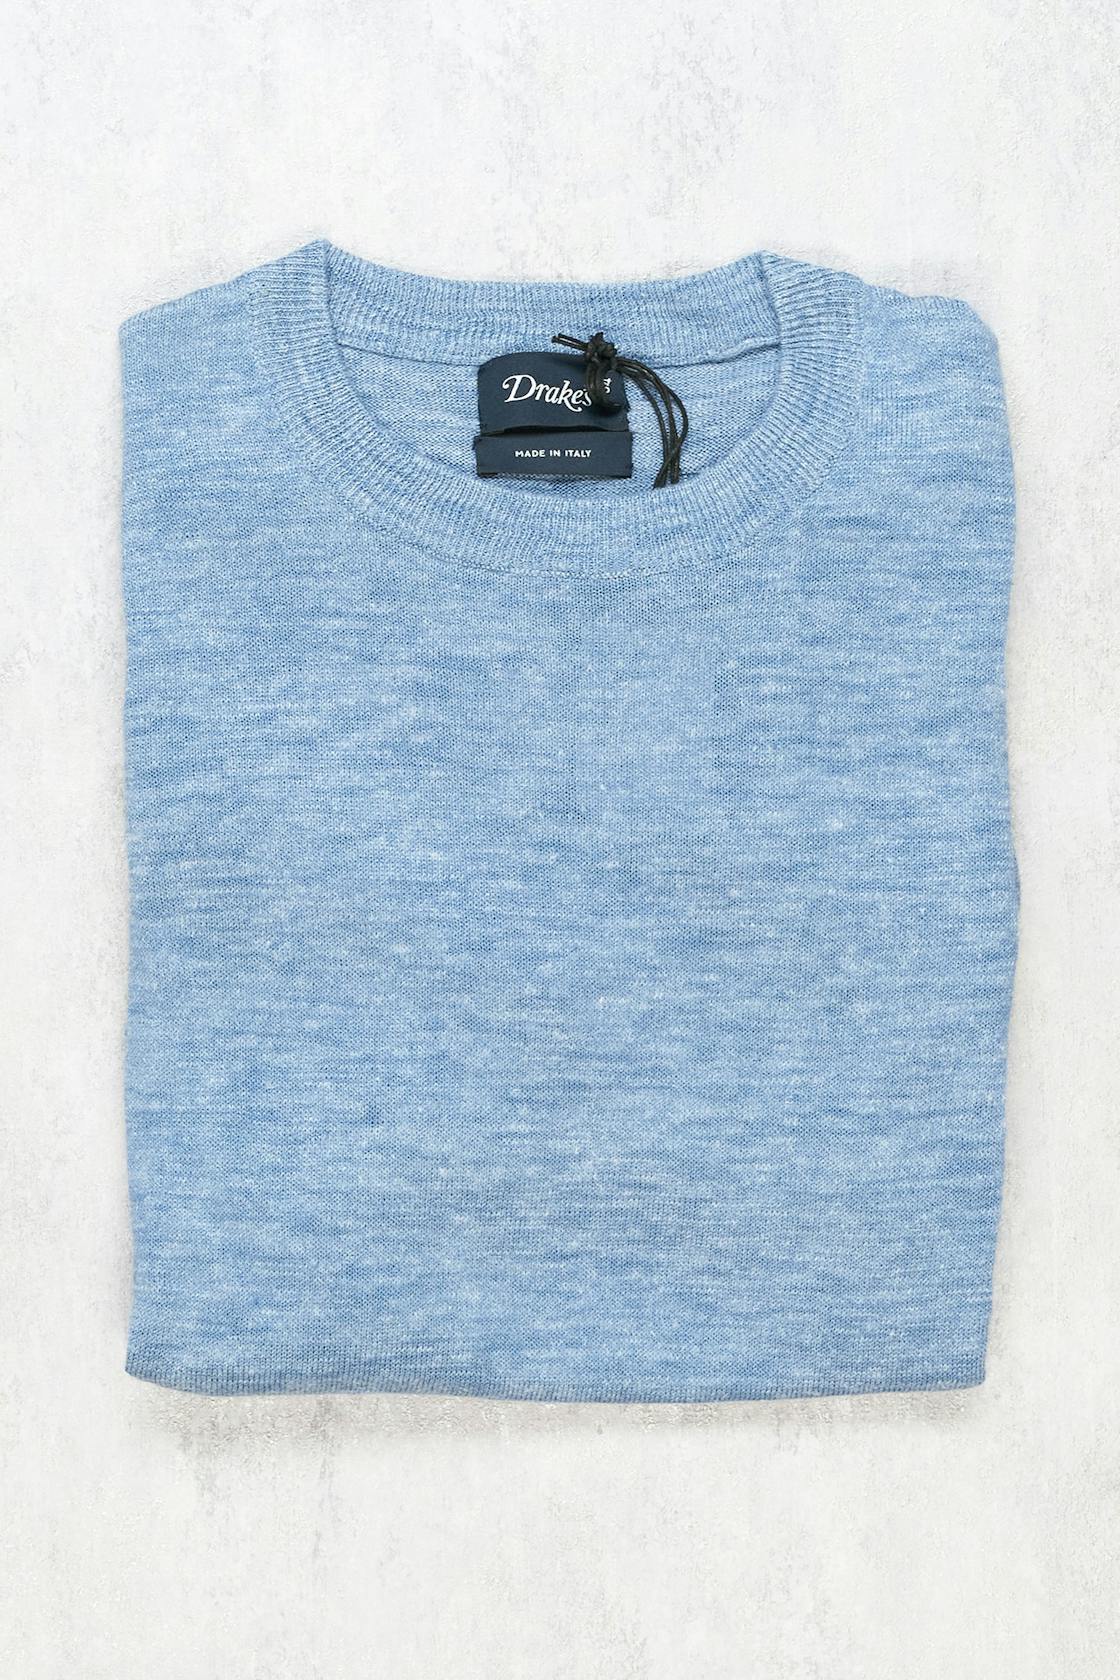 Drake's Blue Linen/Silk Short Sleeve Sweater